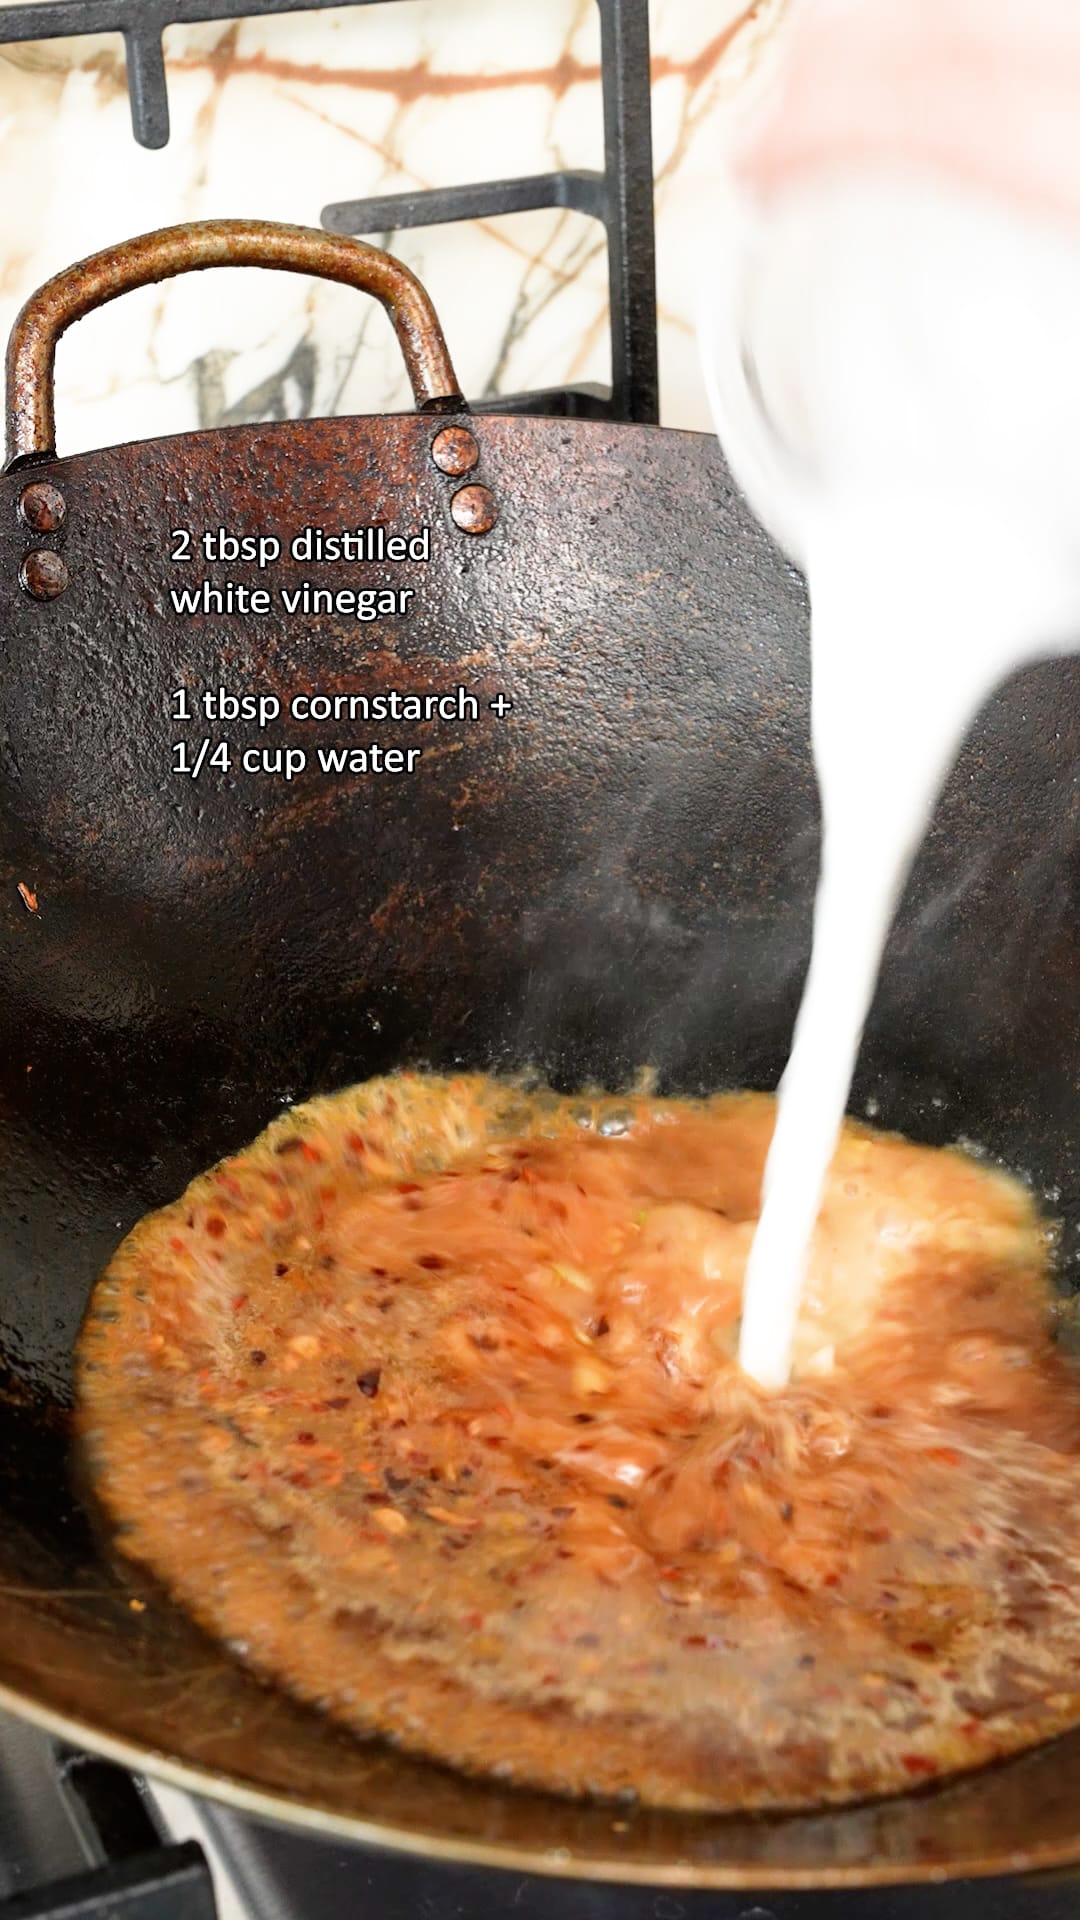 Adding cornstarch slurry to the orange sauce to thicken it in a wok.